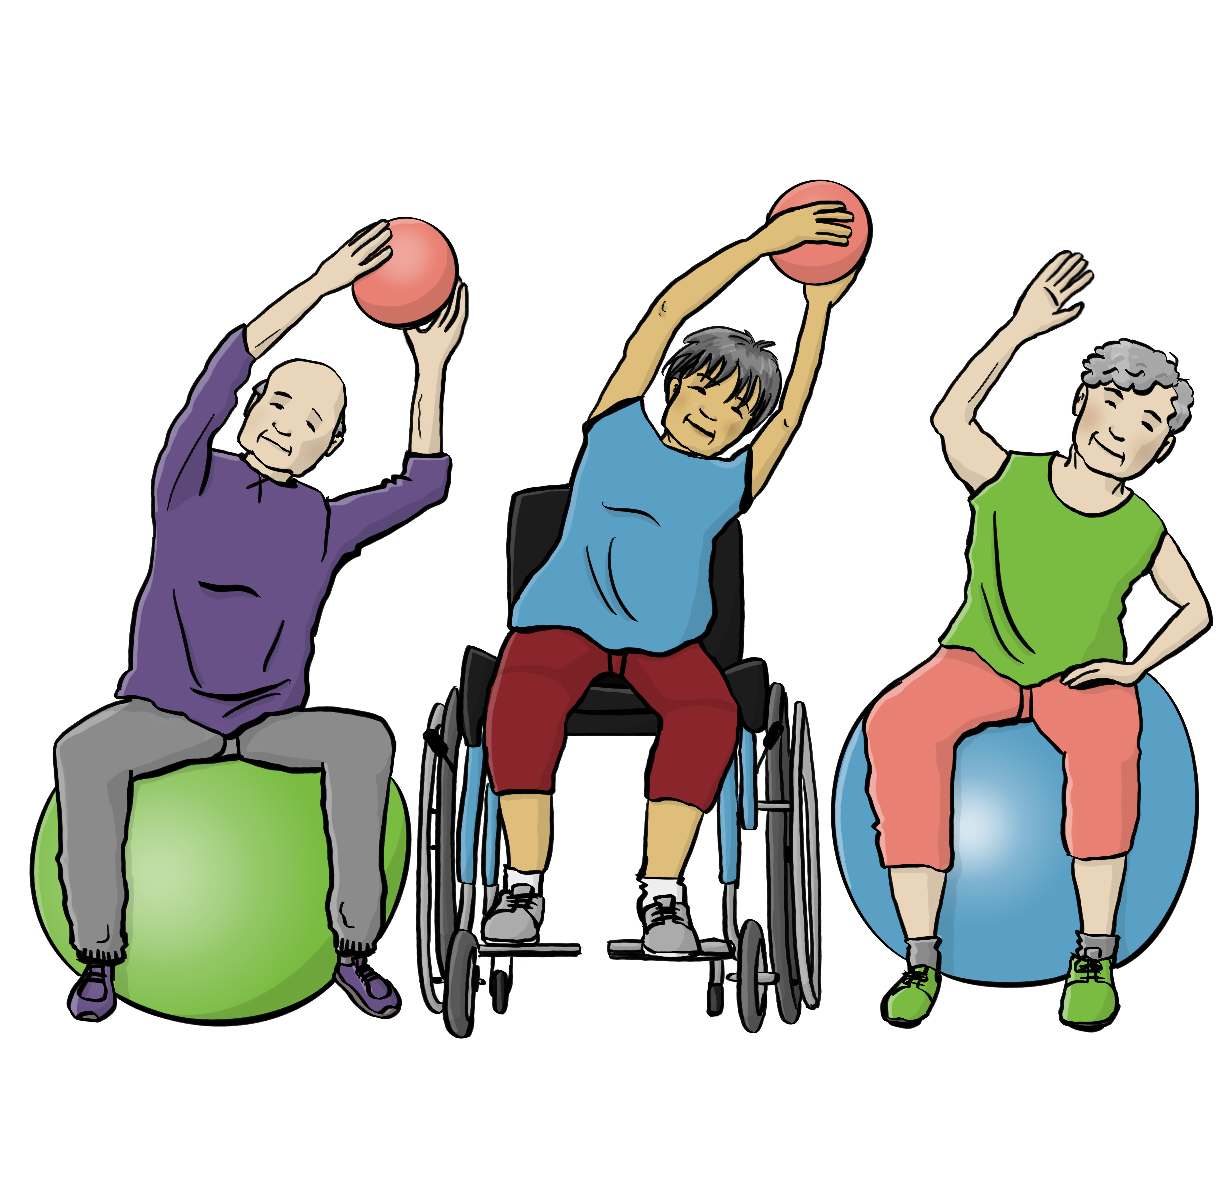 Ein älterer Mann und eine ältere Frau sitzen auf Gymnastikbällen, eine ältere Frau sitzt im Rollstuhl. Zwei von ihnen halten kleine Gymnastikbälle in den Händen. Alle strecken die Arme nach oben und beugen sich zur Seite. 